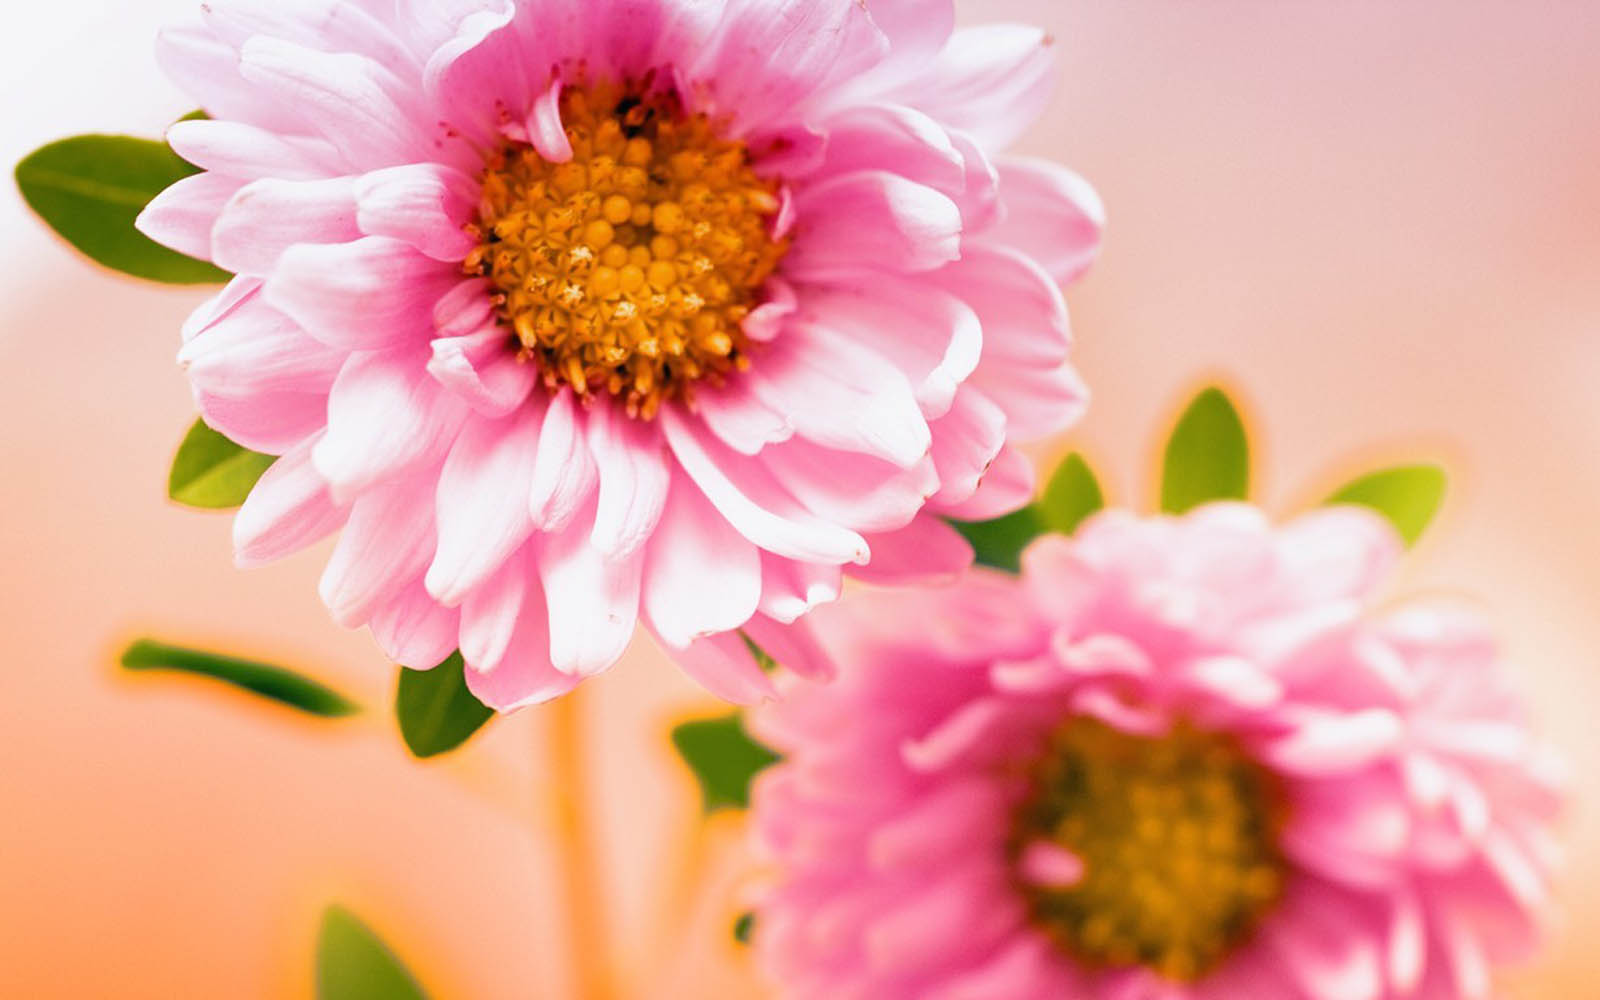 GambarGambar Bunga Berwarna Merah Muda  wallpaper